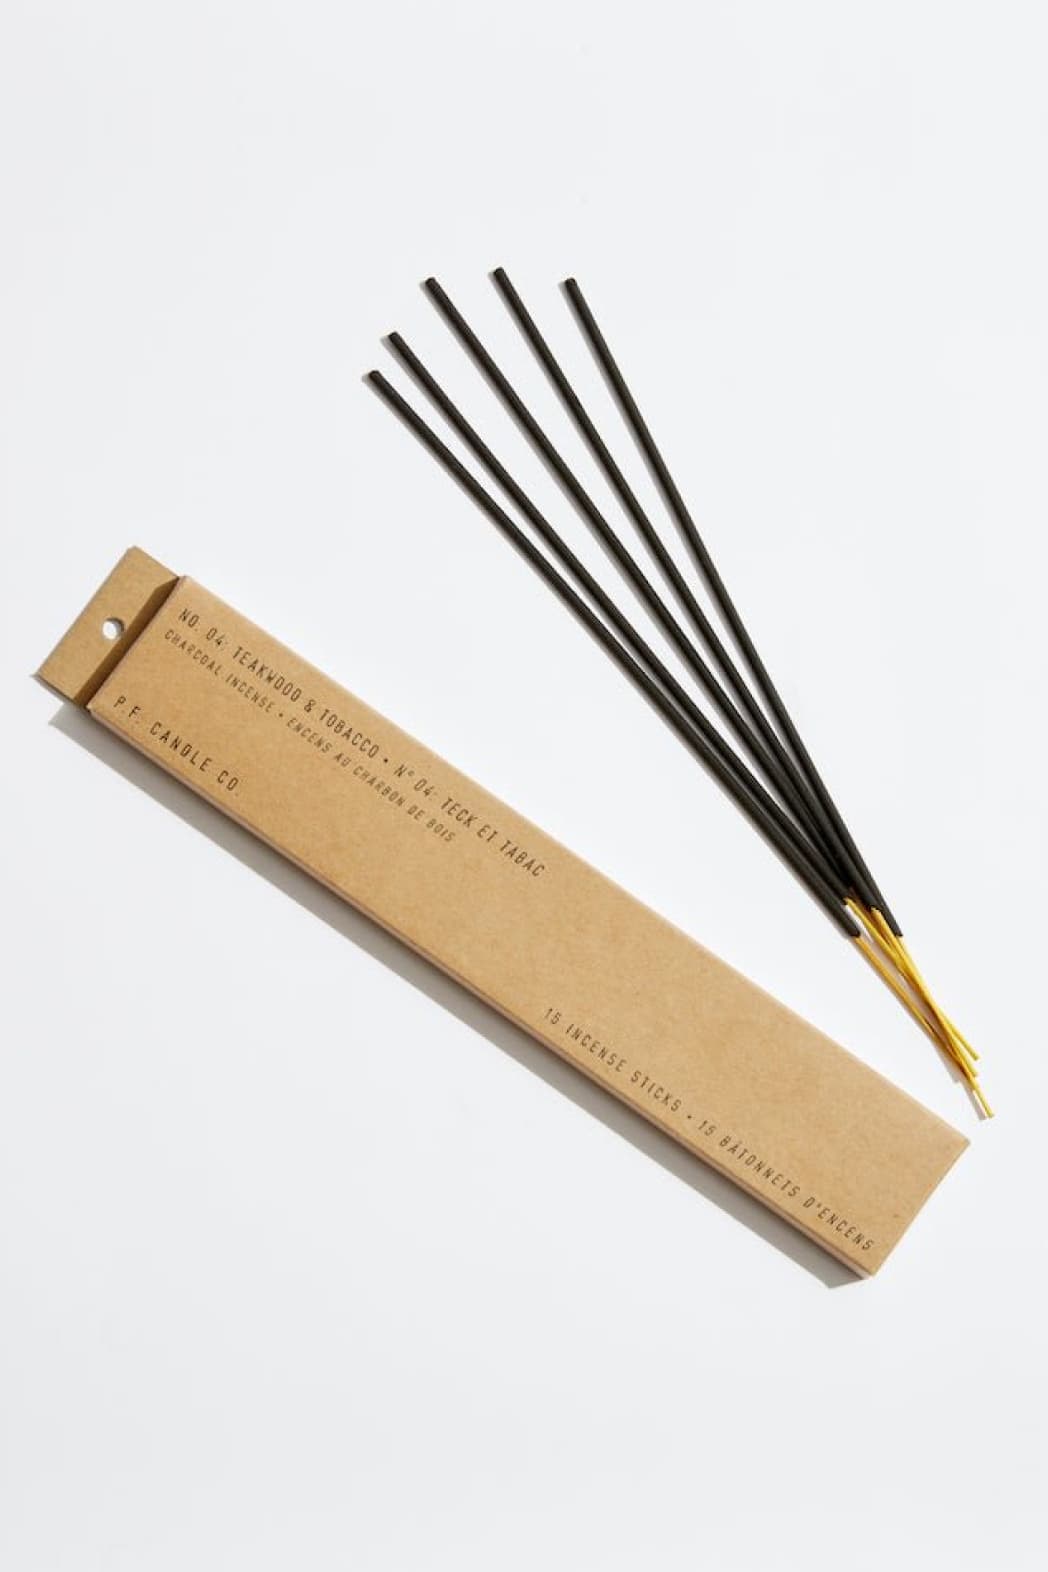 Teakwood & Tobacco Incense Sticks - Incense Stick